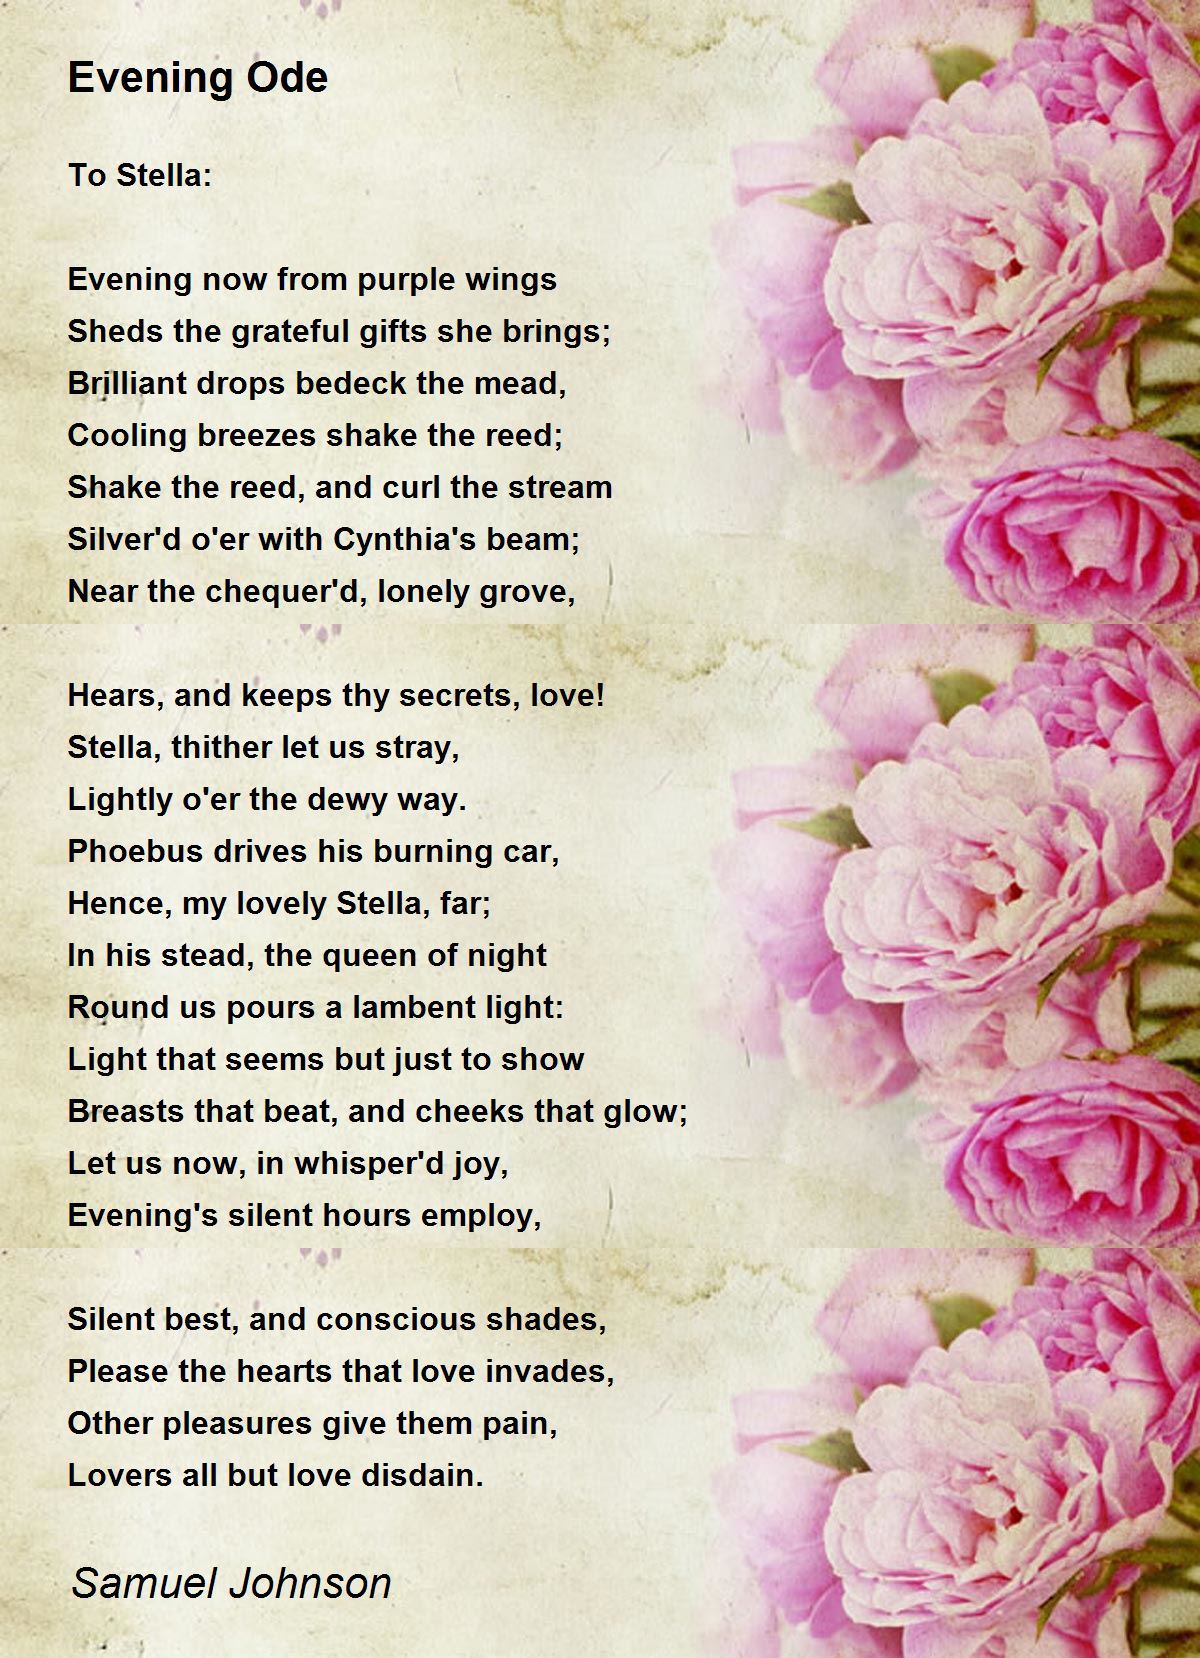 Evening Ode Poem by Samuel Johnson - Poem Hunter
